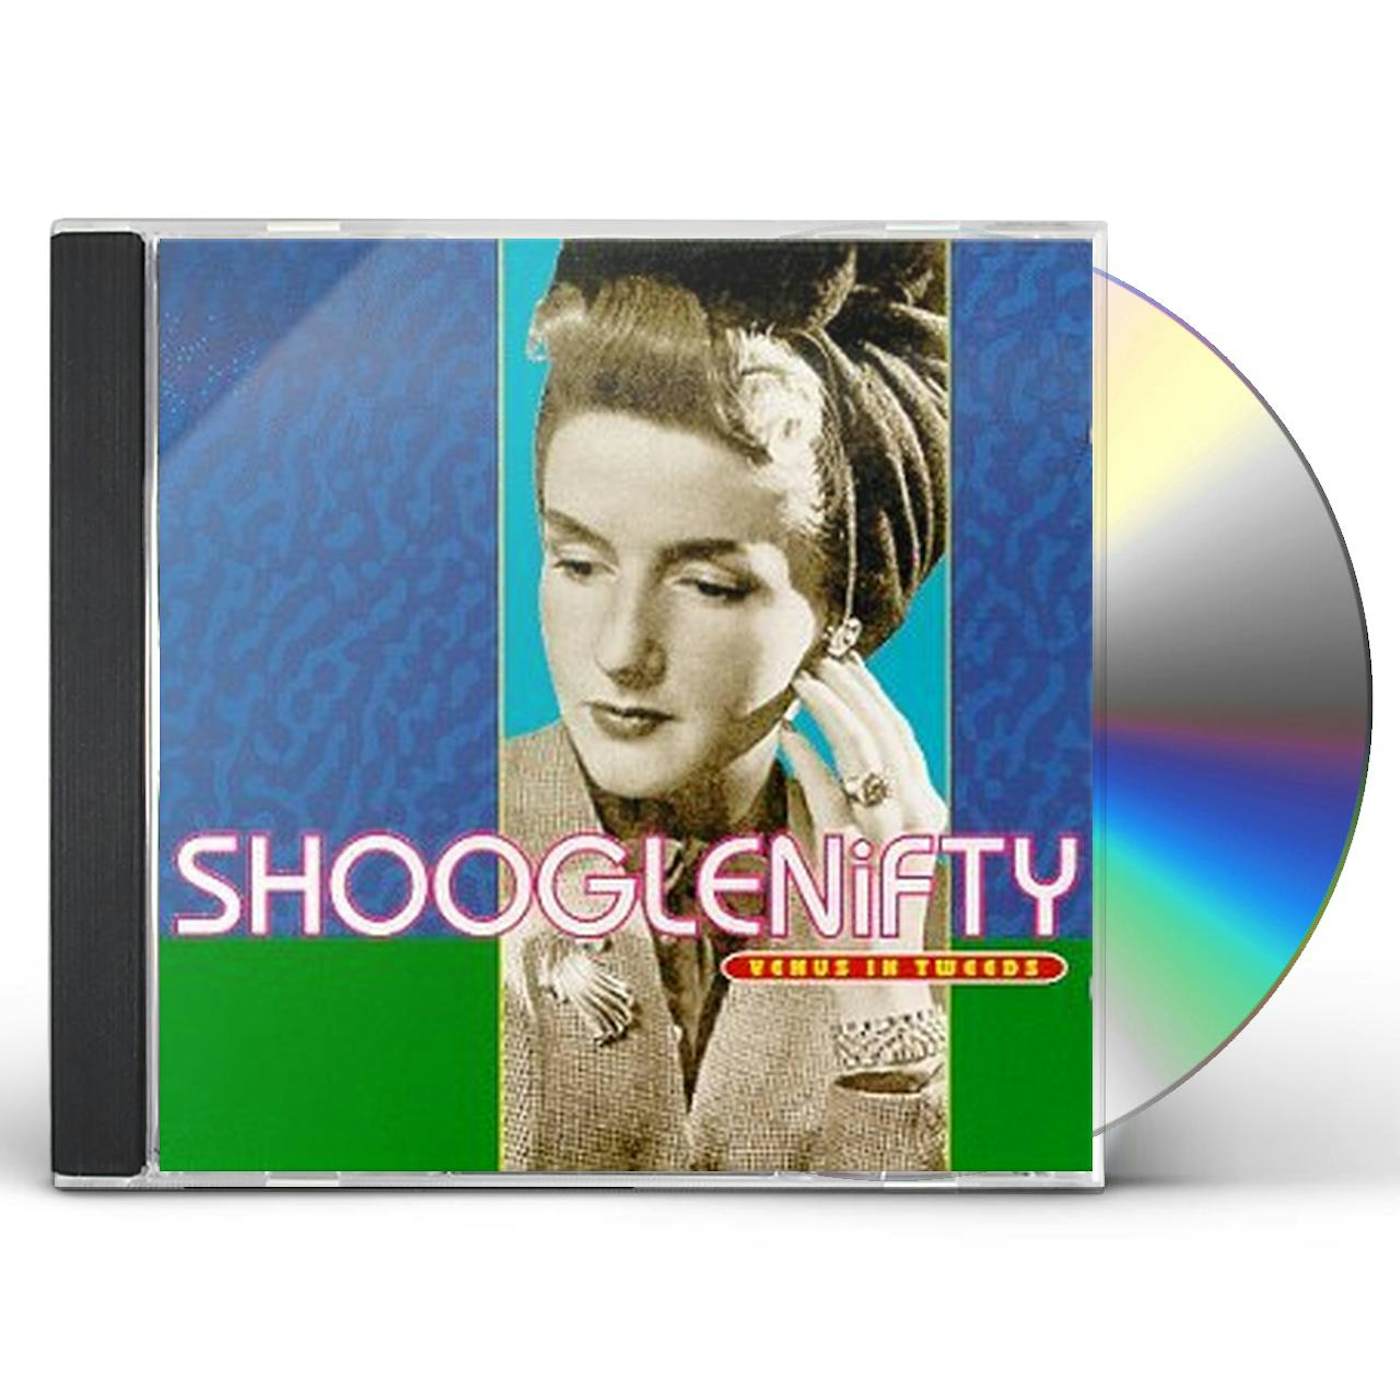 Shooglenifty VENUS IN TWEEDS CD